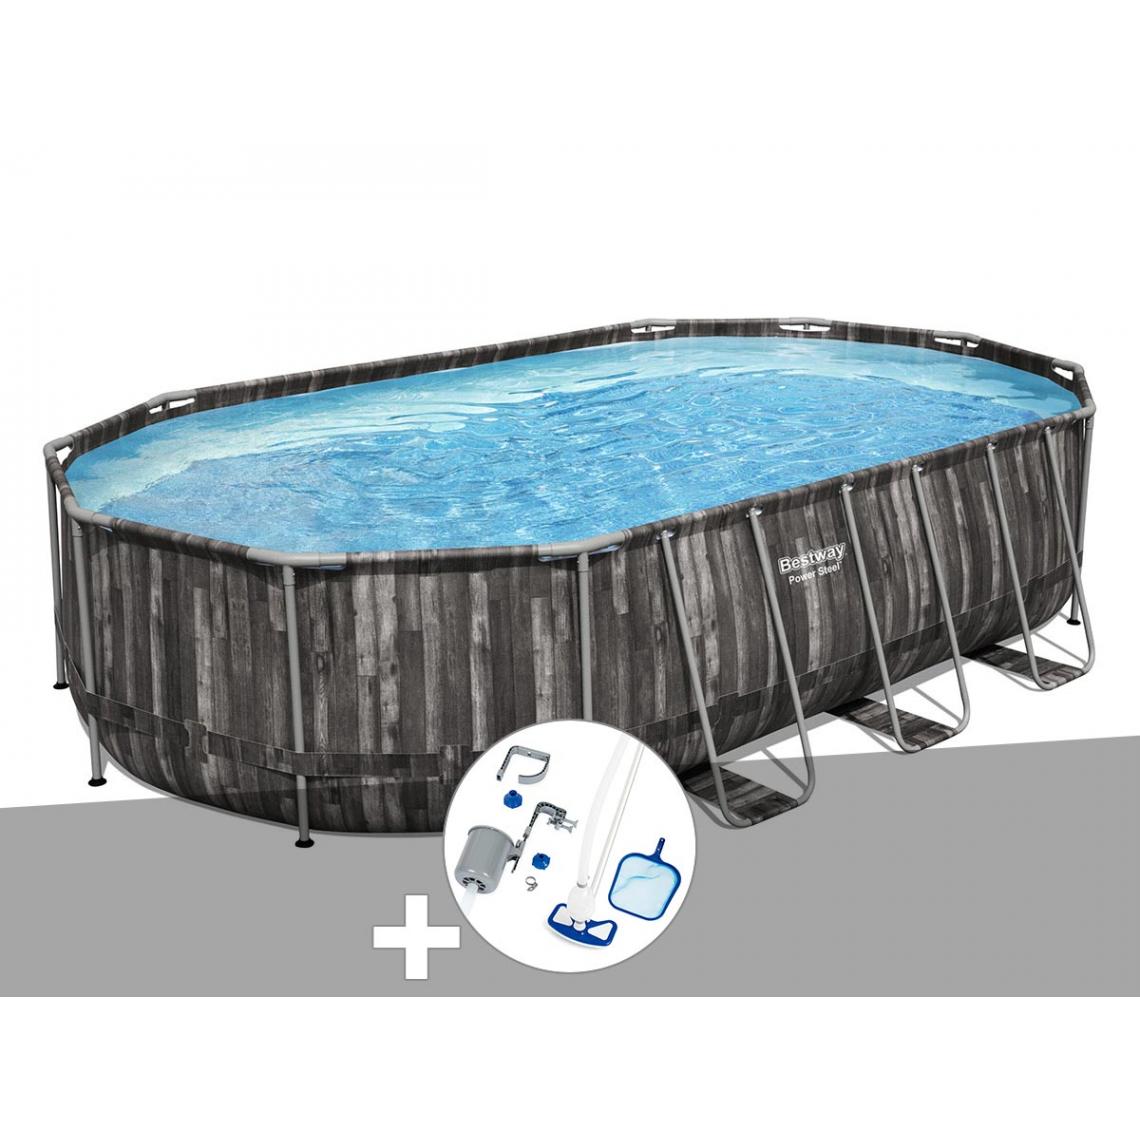 Bestway - Kit piscine tubulaire ovale Bestway Power Steel décor bois 6,10 x 3,66 x 1,22 m + Kit d'entretien Deluxe - Piscine Tubulaire